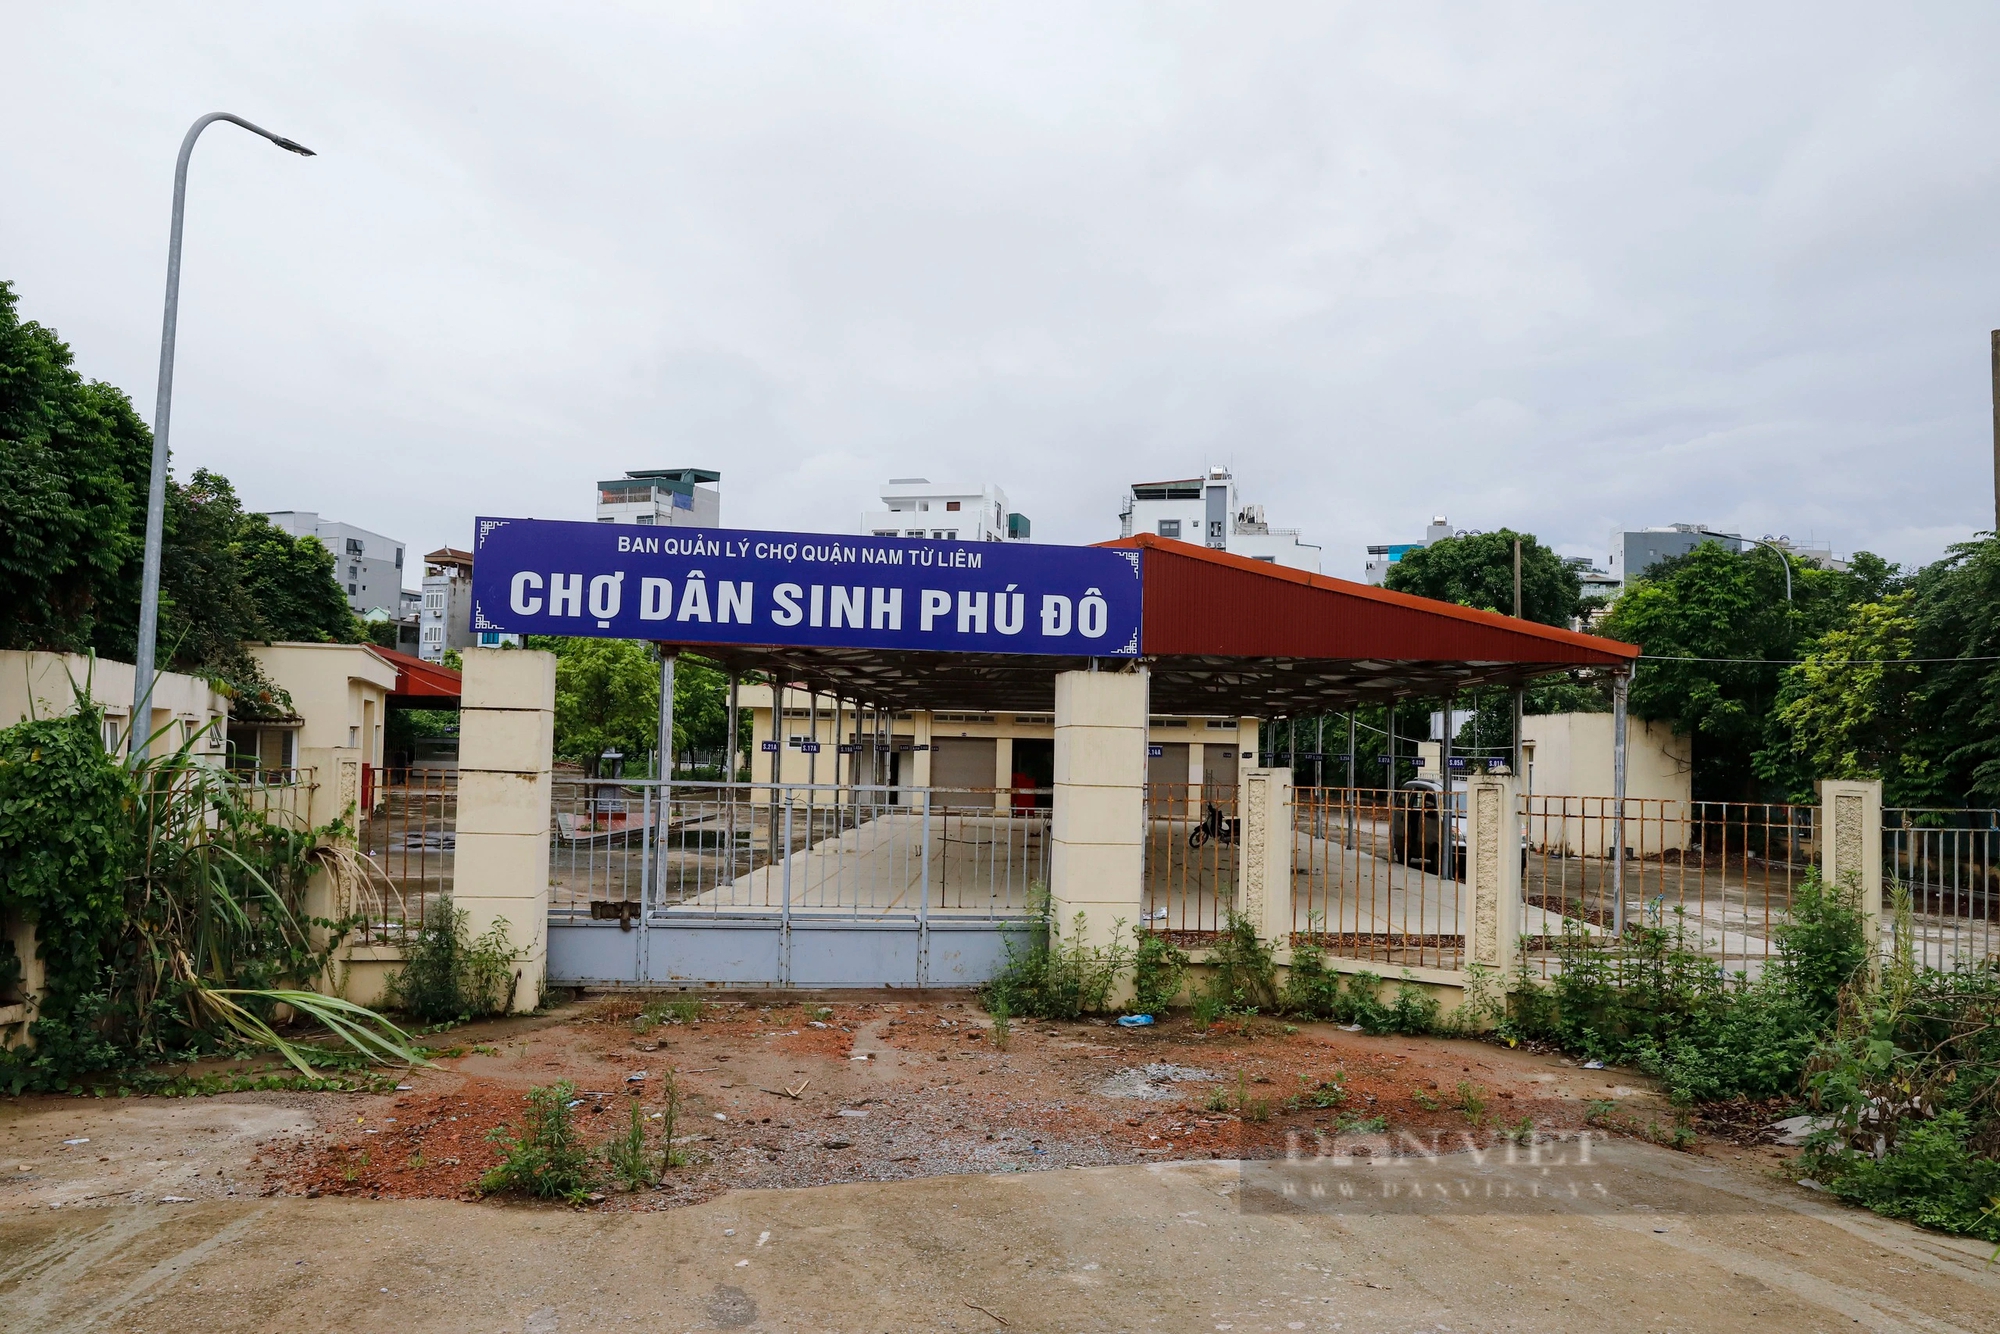 Chợ bỏ hoang ở Hà Nội: Chợ 18 tỷ xây xong "đắp chiếu", tiểu thương chật vật buôn bán sau lớp hàng rào- Ảnh 2.